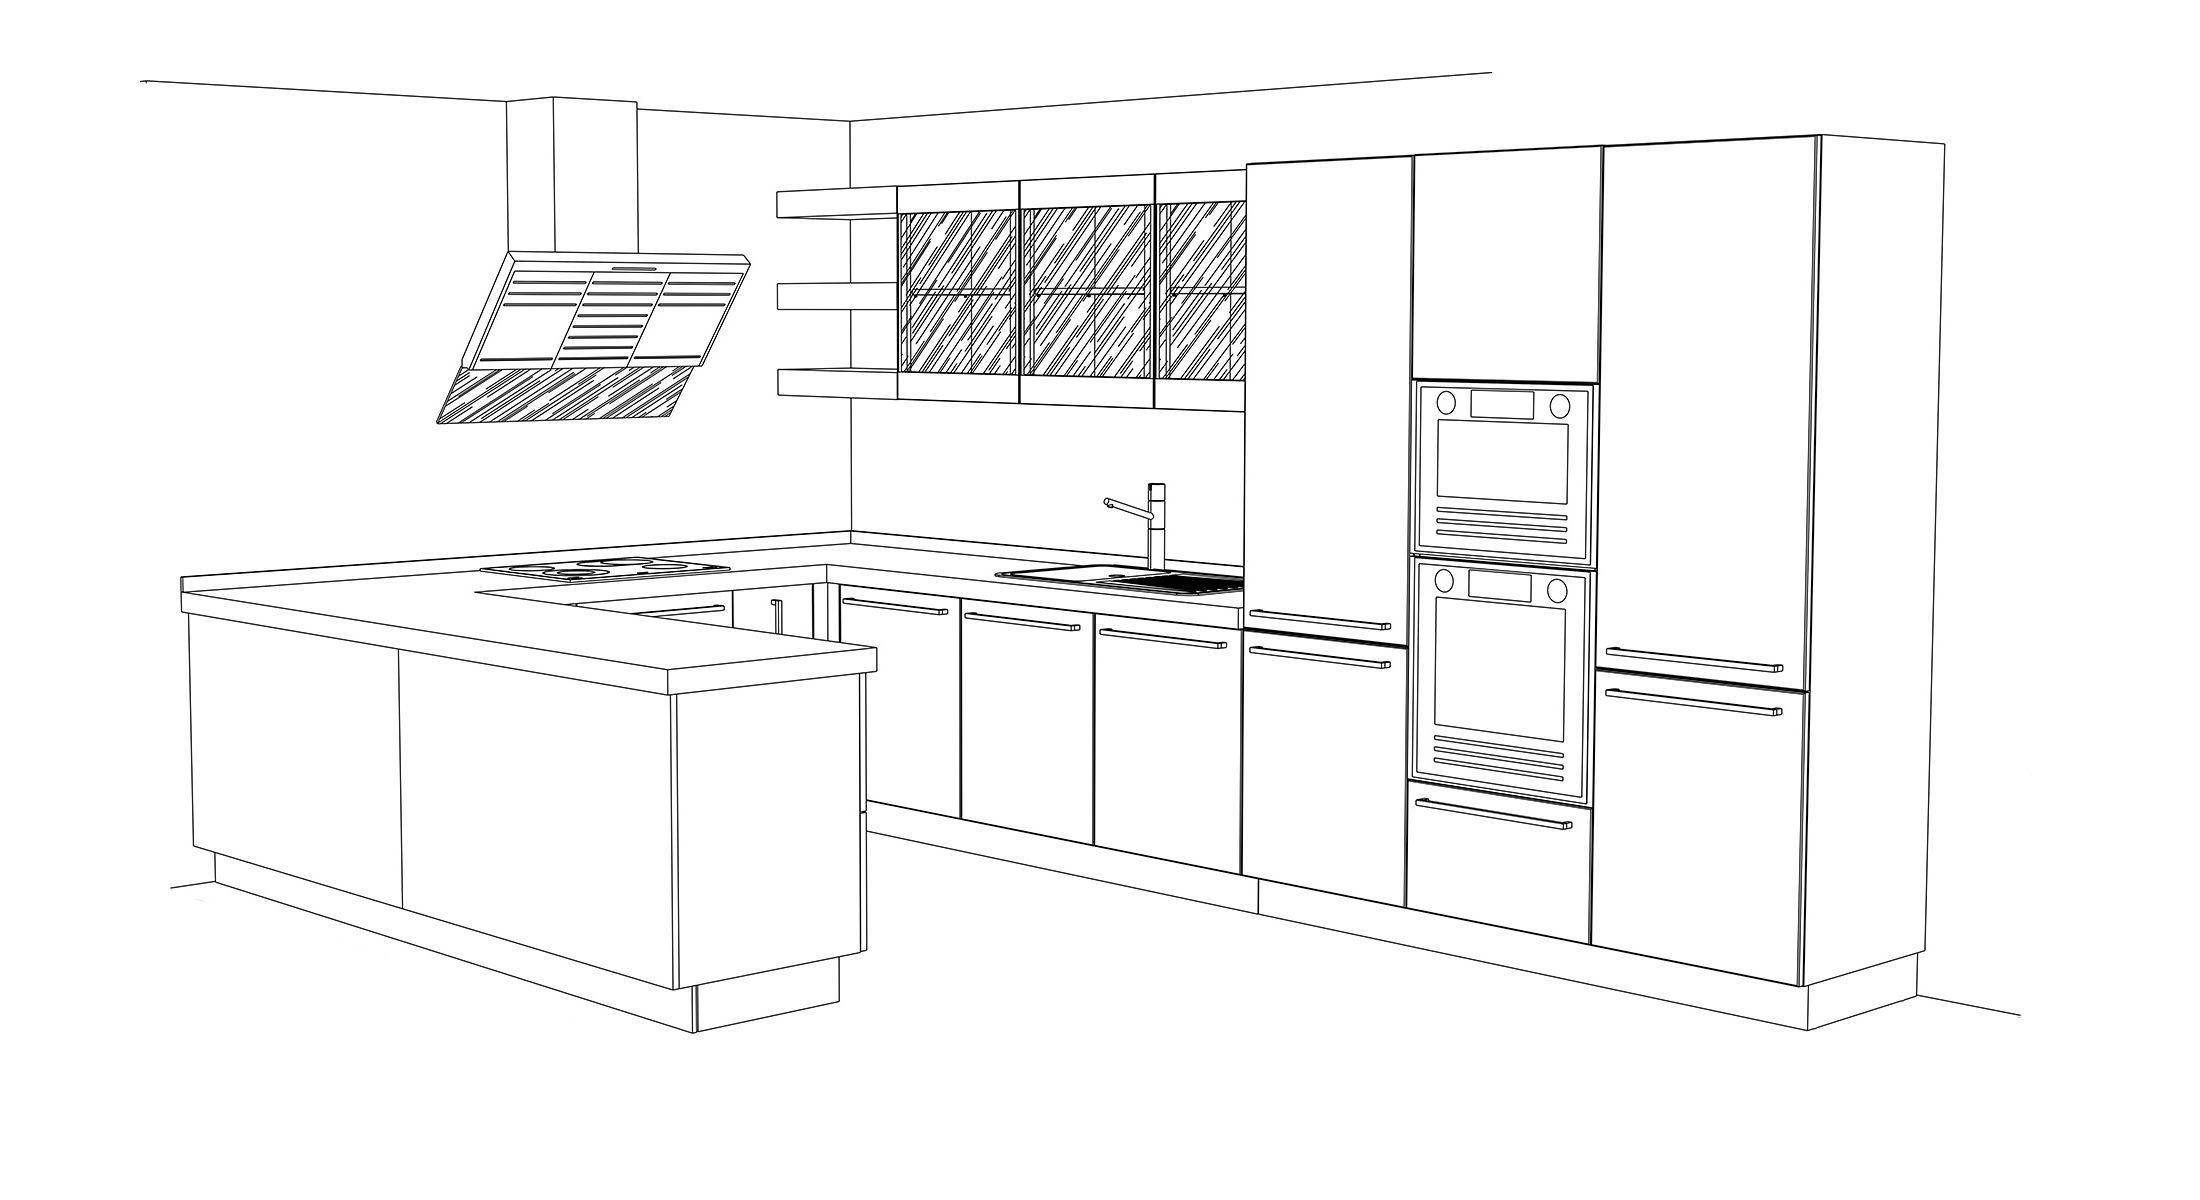 Программа для создания кухонного гарнитура: как спроектировать и рассчитать самостоятельно